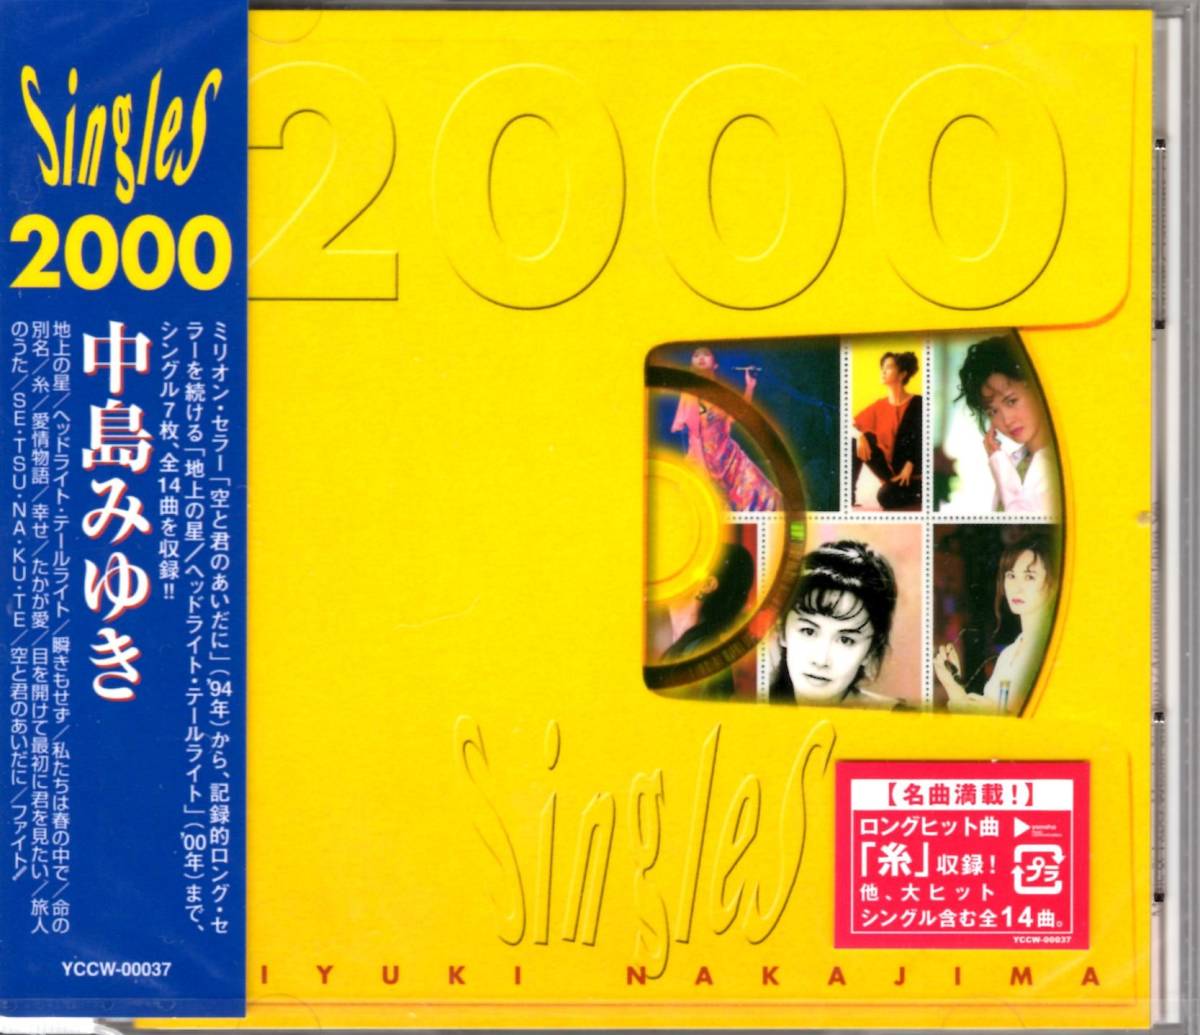 新品未開封 中島みゆき Singles 2000 ベストアルバム YAMAHA YCCW-00037の画像1